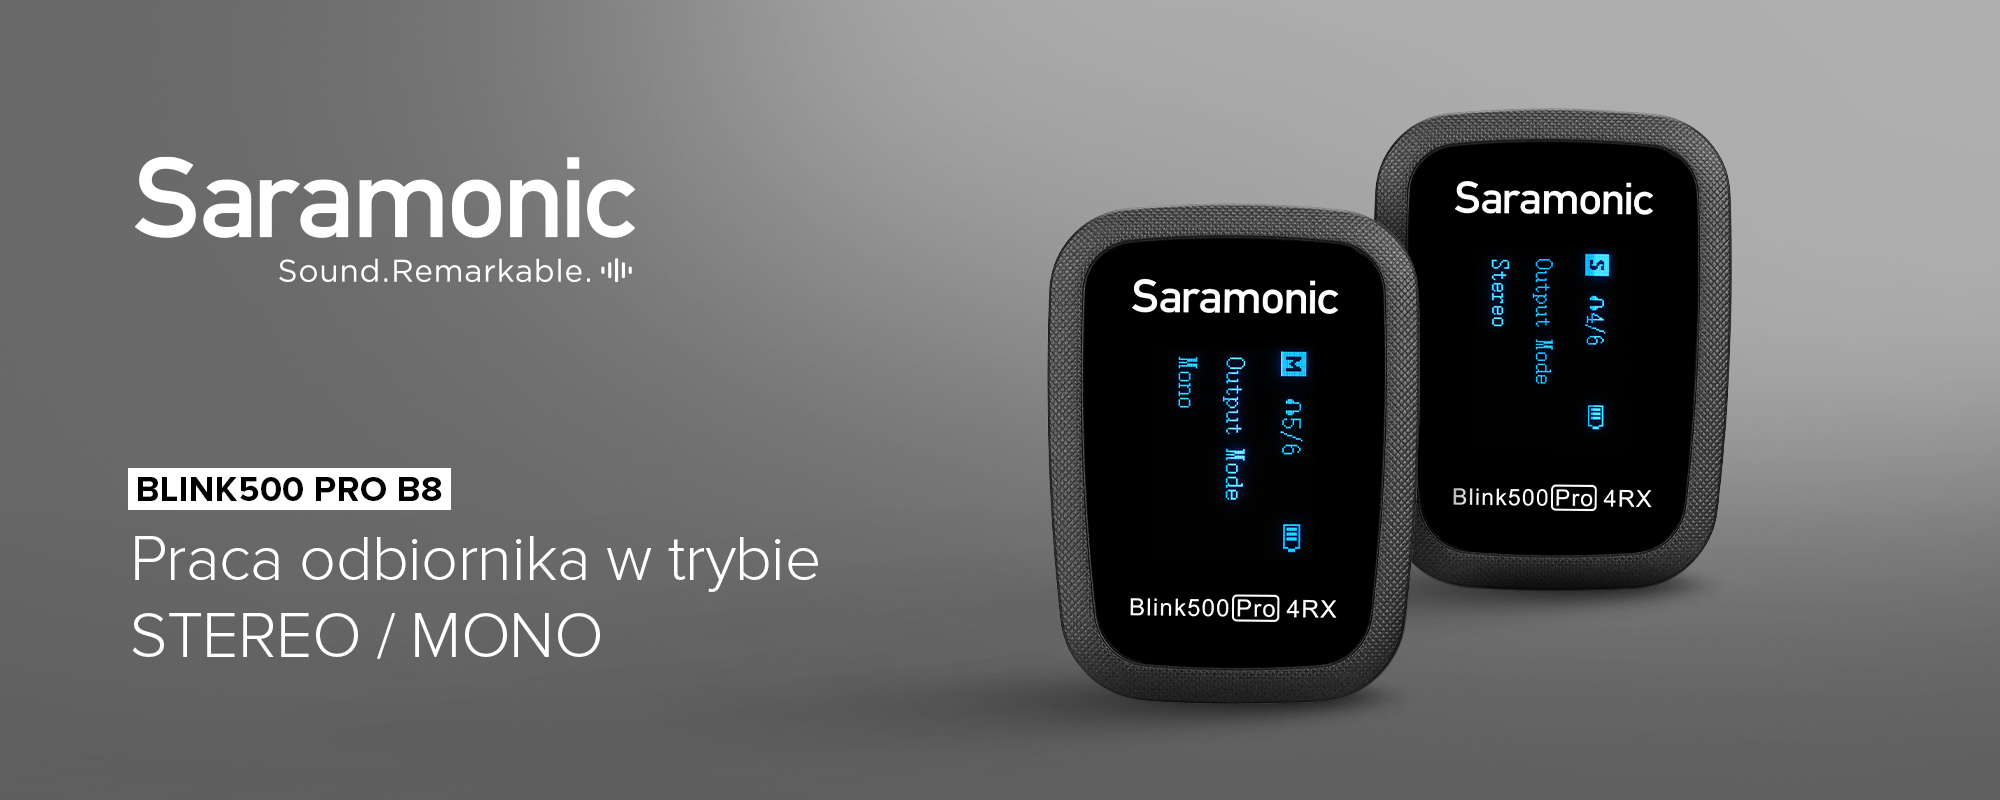 Saramonic Blink500 PRO B8 (4x TX + RX)